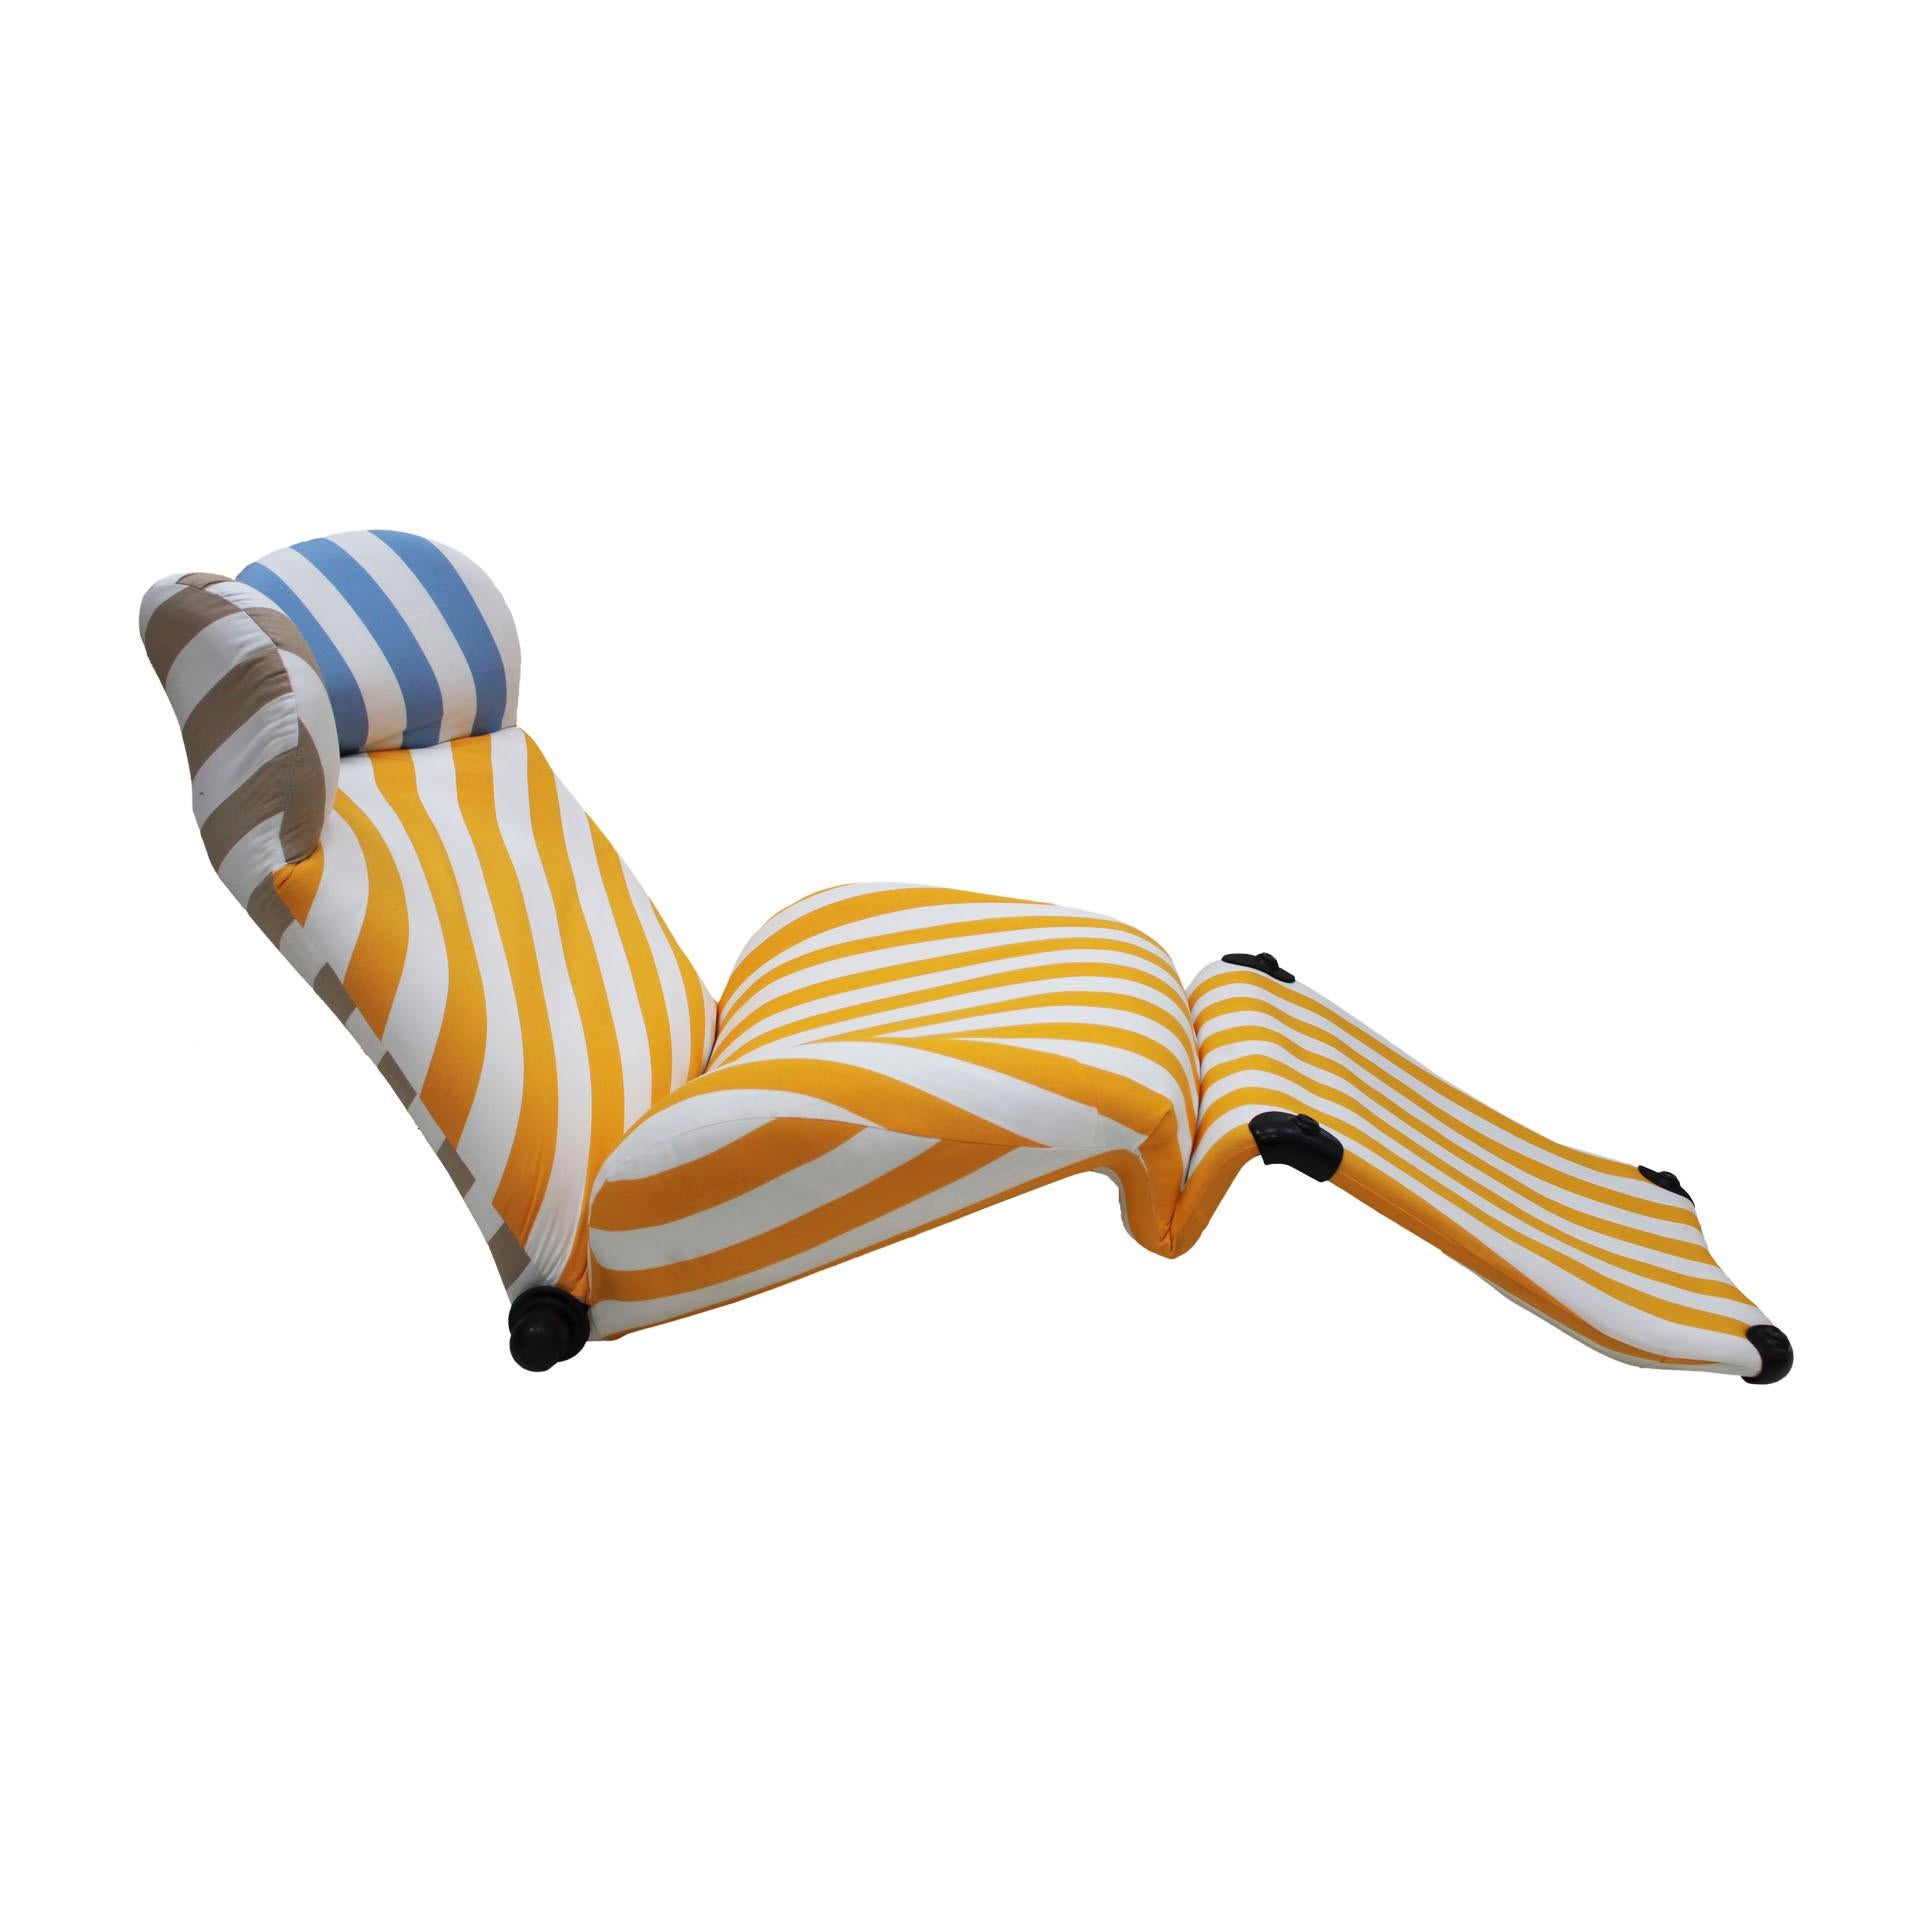 Sessel - Chaise longue mod. Wink 111, entworfen von Toshiyuki Kita in den 80er Jahren und herausgegeben von Cassina. Struktur aus Stahl, gepolstert mit Baumwollstoff mit Streifenmuster in verschiedenen Farbtönen. Verstellbare Ohr-/Kopfstütze und